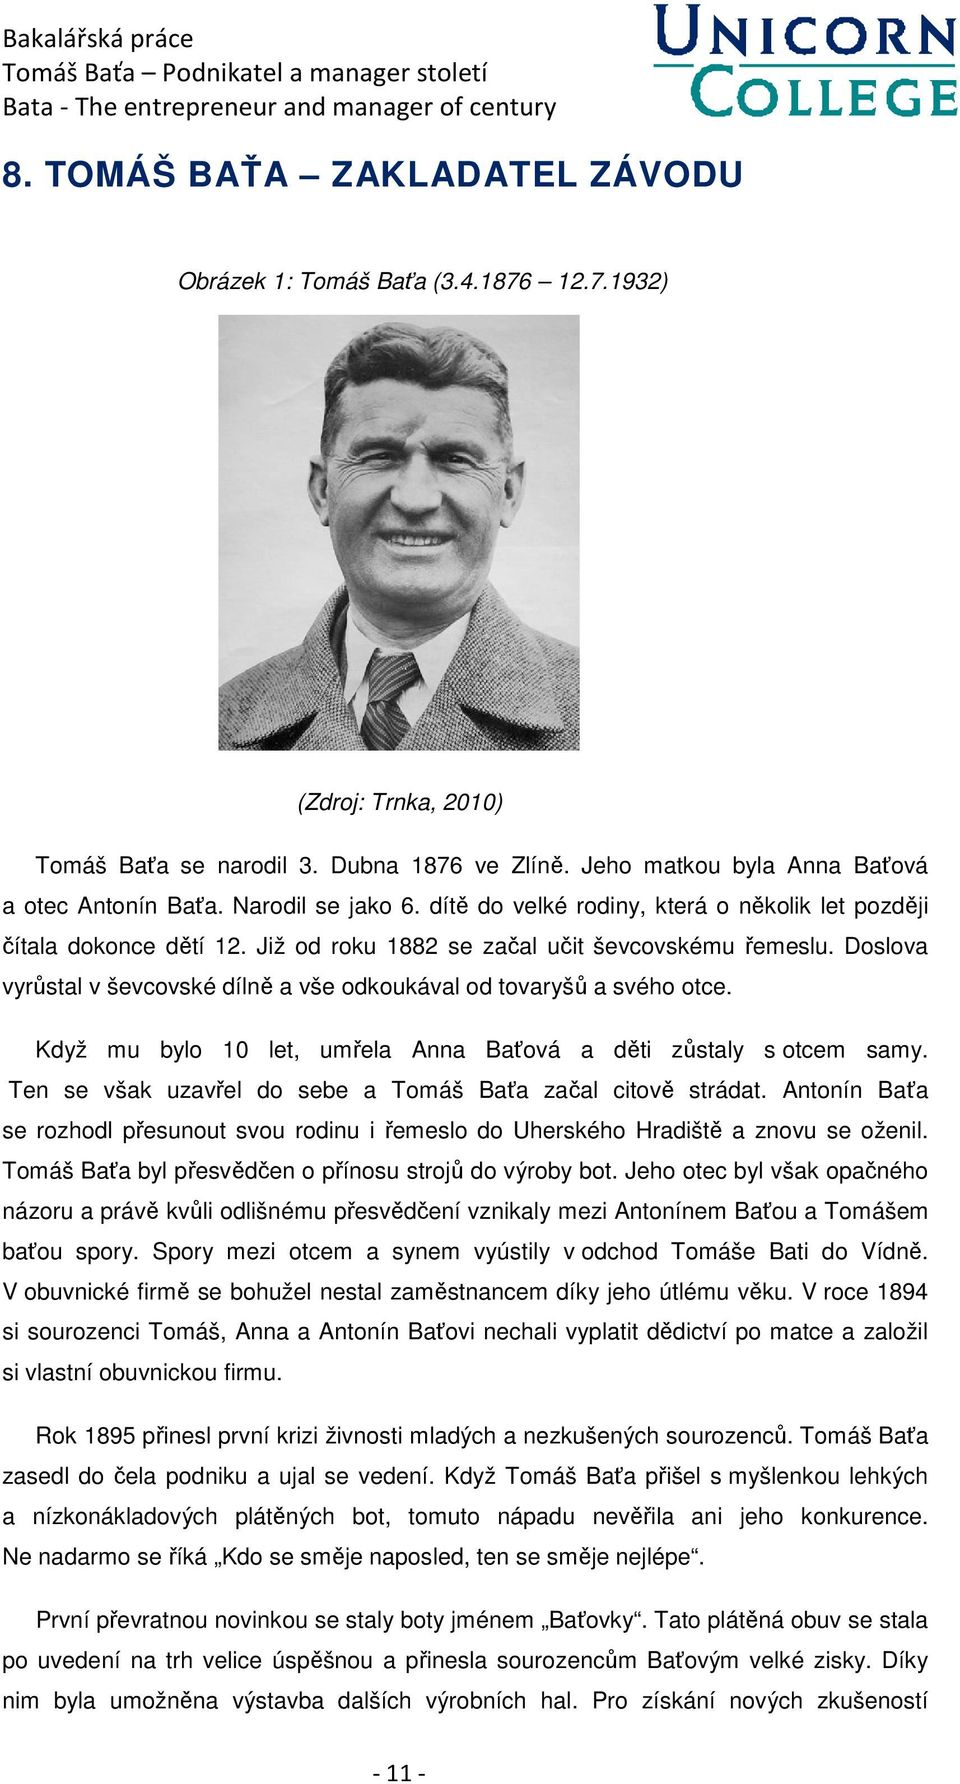 BAKALÁŘSKÁ PRÁCE. Tomáš Baťa- podnikatel a manager století. Bata-the  entrepreneur and manager of Century. Filip Kubín - PDF Stažení zdarma